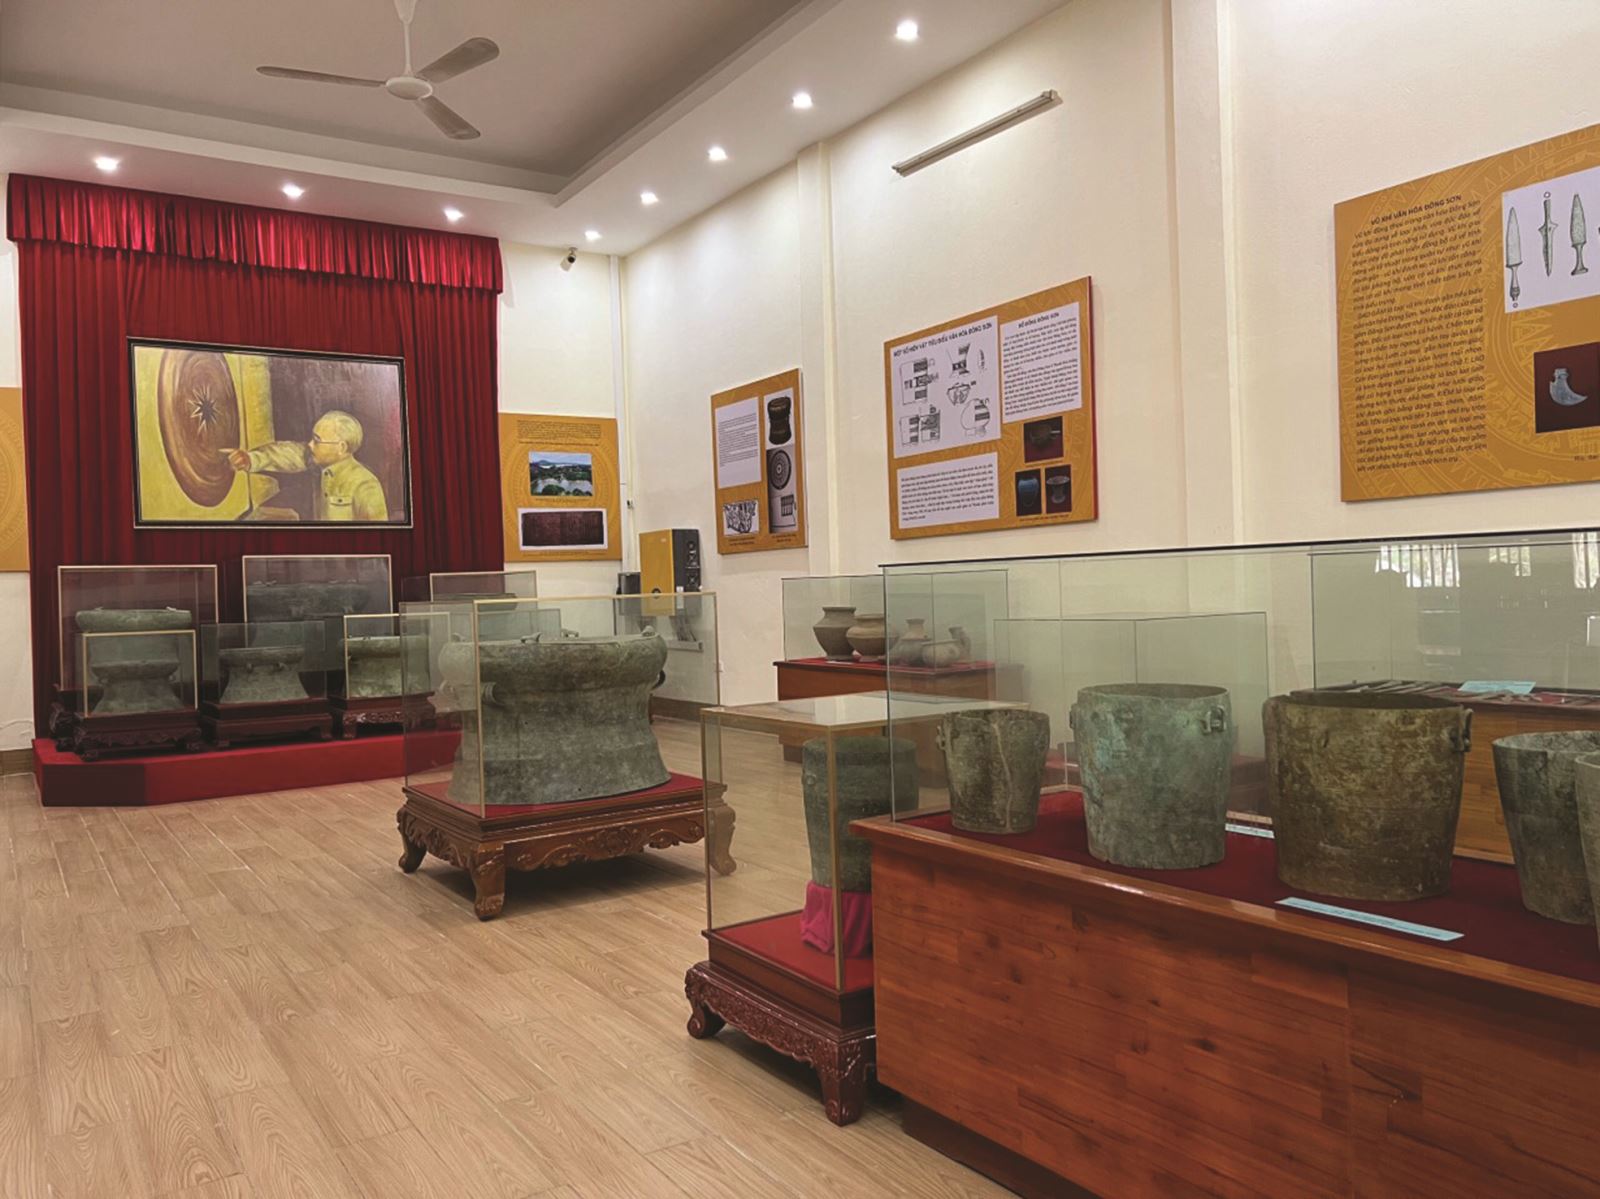 Có một “Bảo tàng di sản - thiên nhiên” ở xứ Thanh: Điểm Du lịch - Văn hóa hấp dẫn!